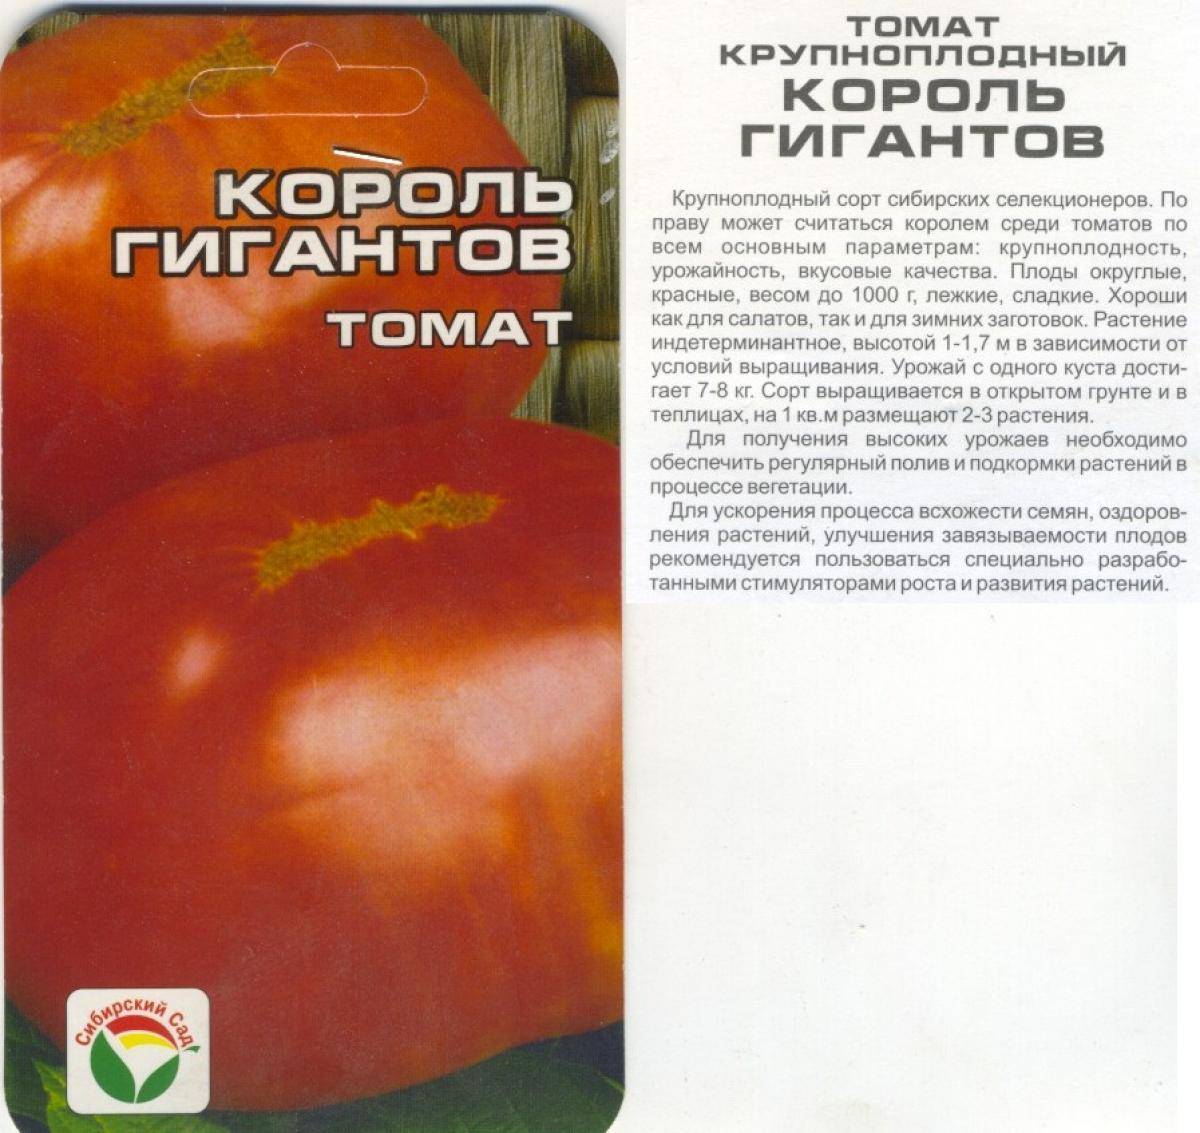 Индетерминантные и детерминантные сорта томатов: что это такое и как их выращивать?